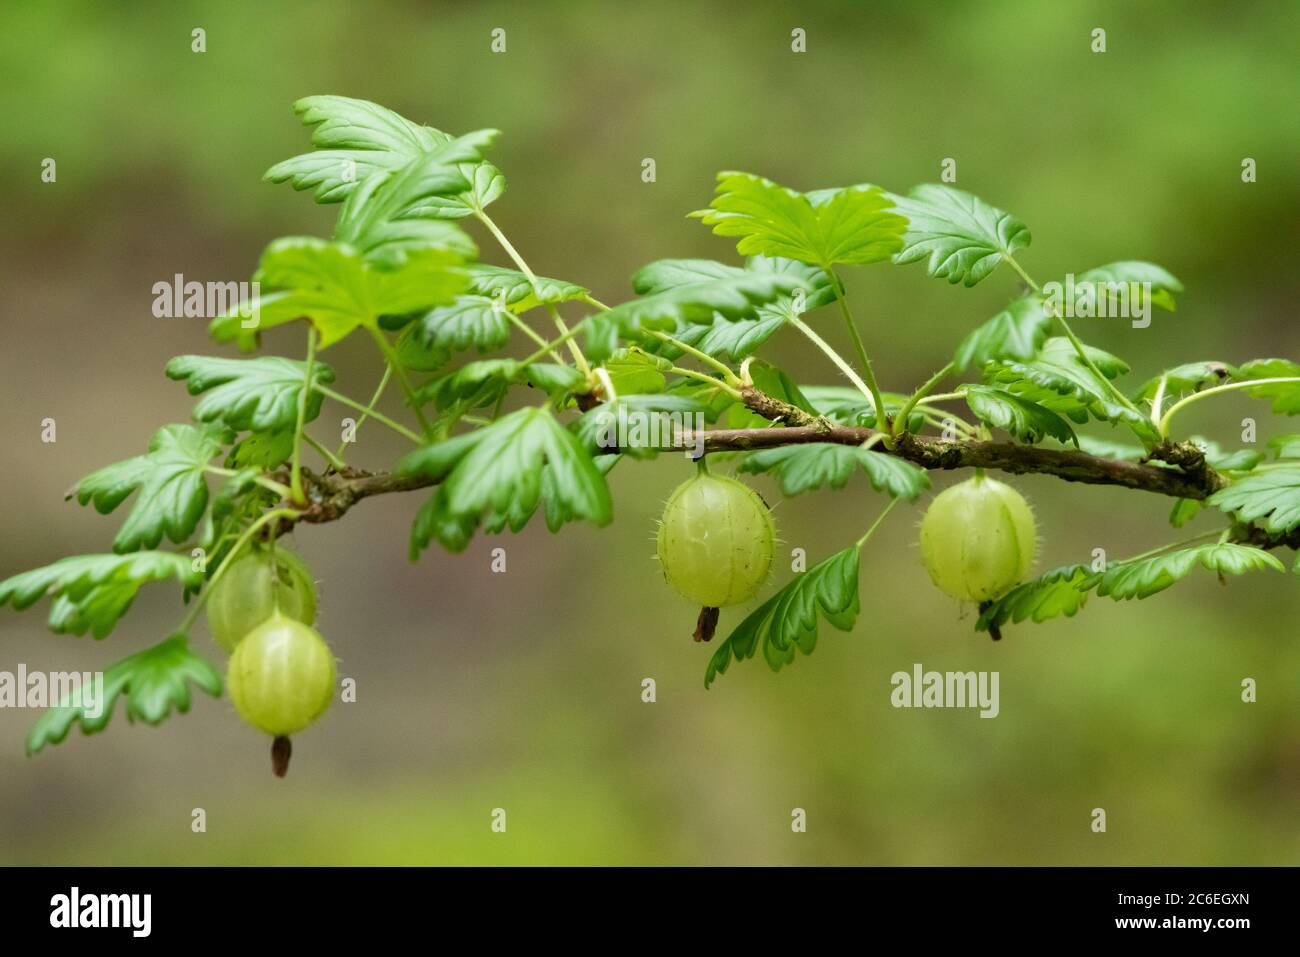 Hairy-stem gooseberry, Chipping, Preston, Lancashire, England, UK Stock Photo